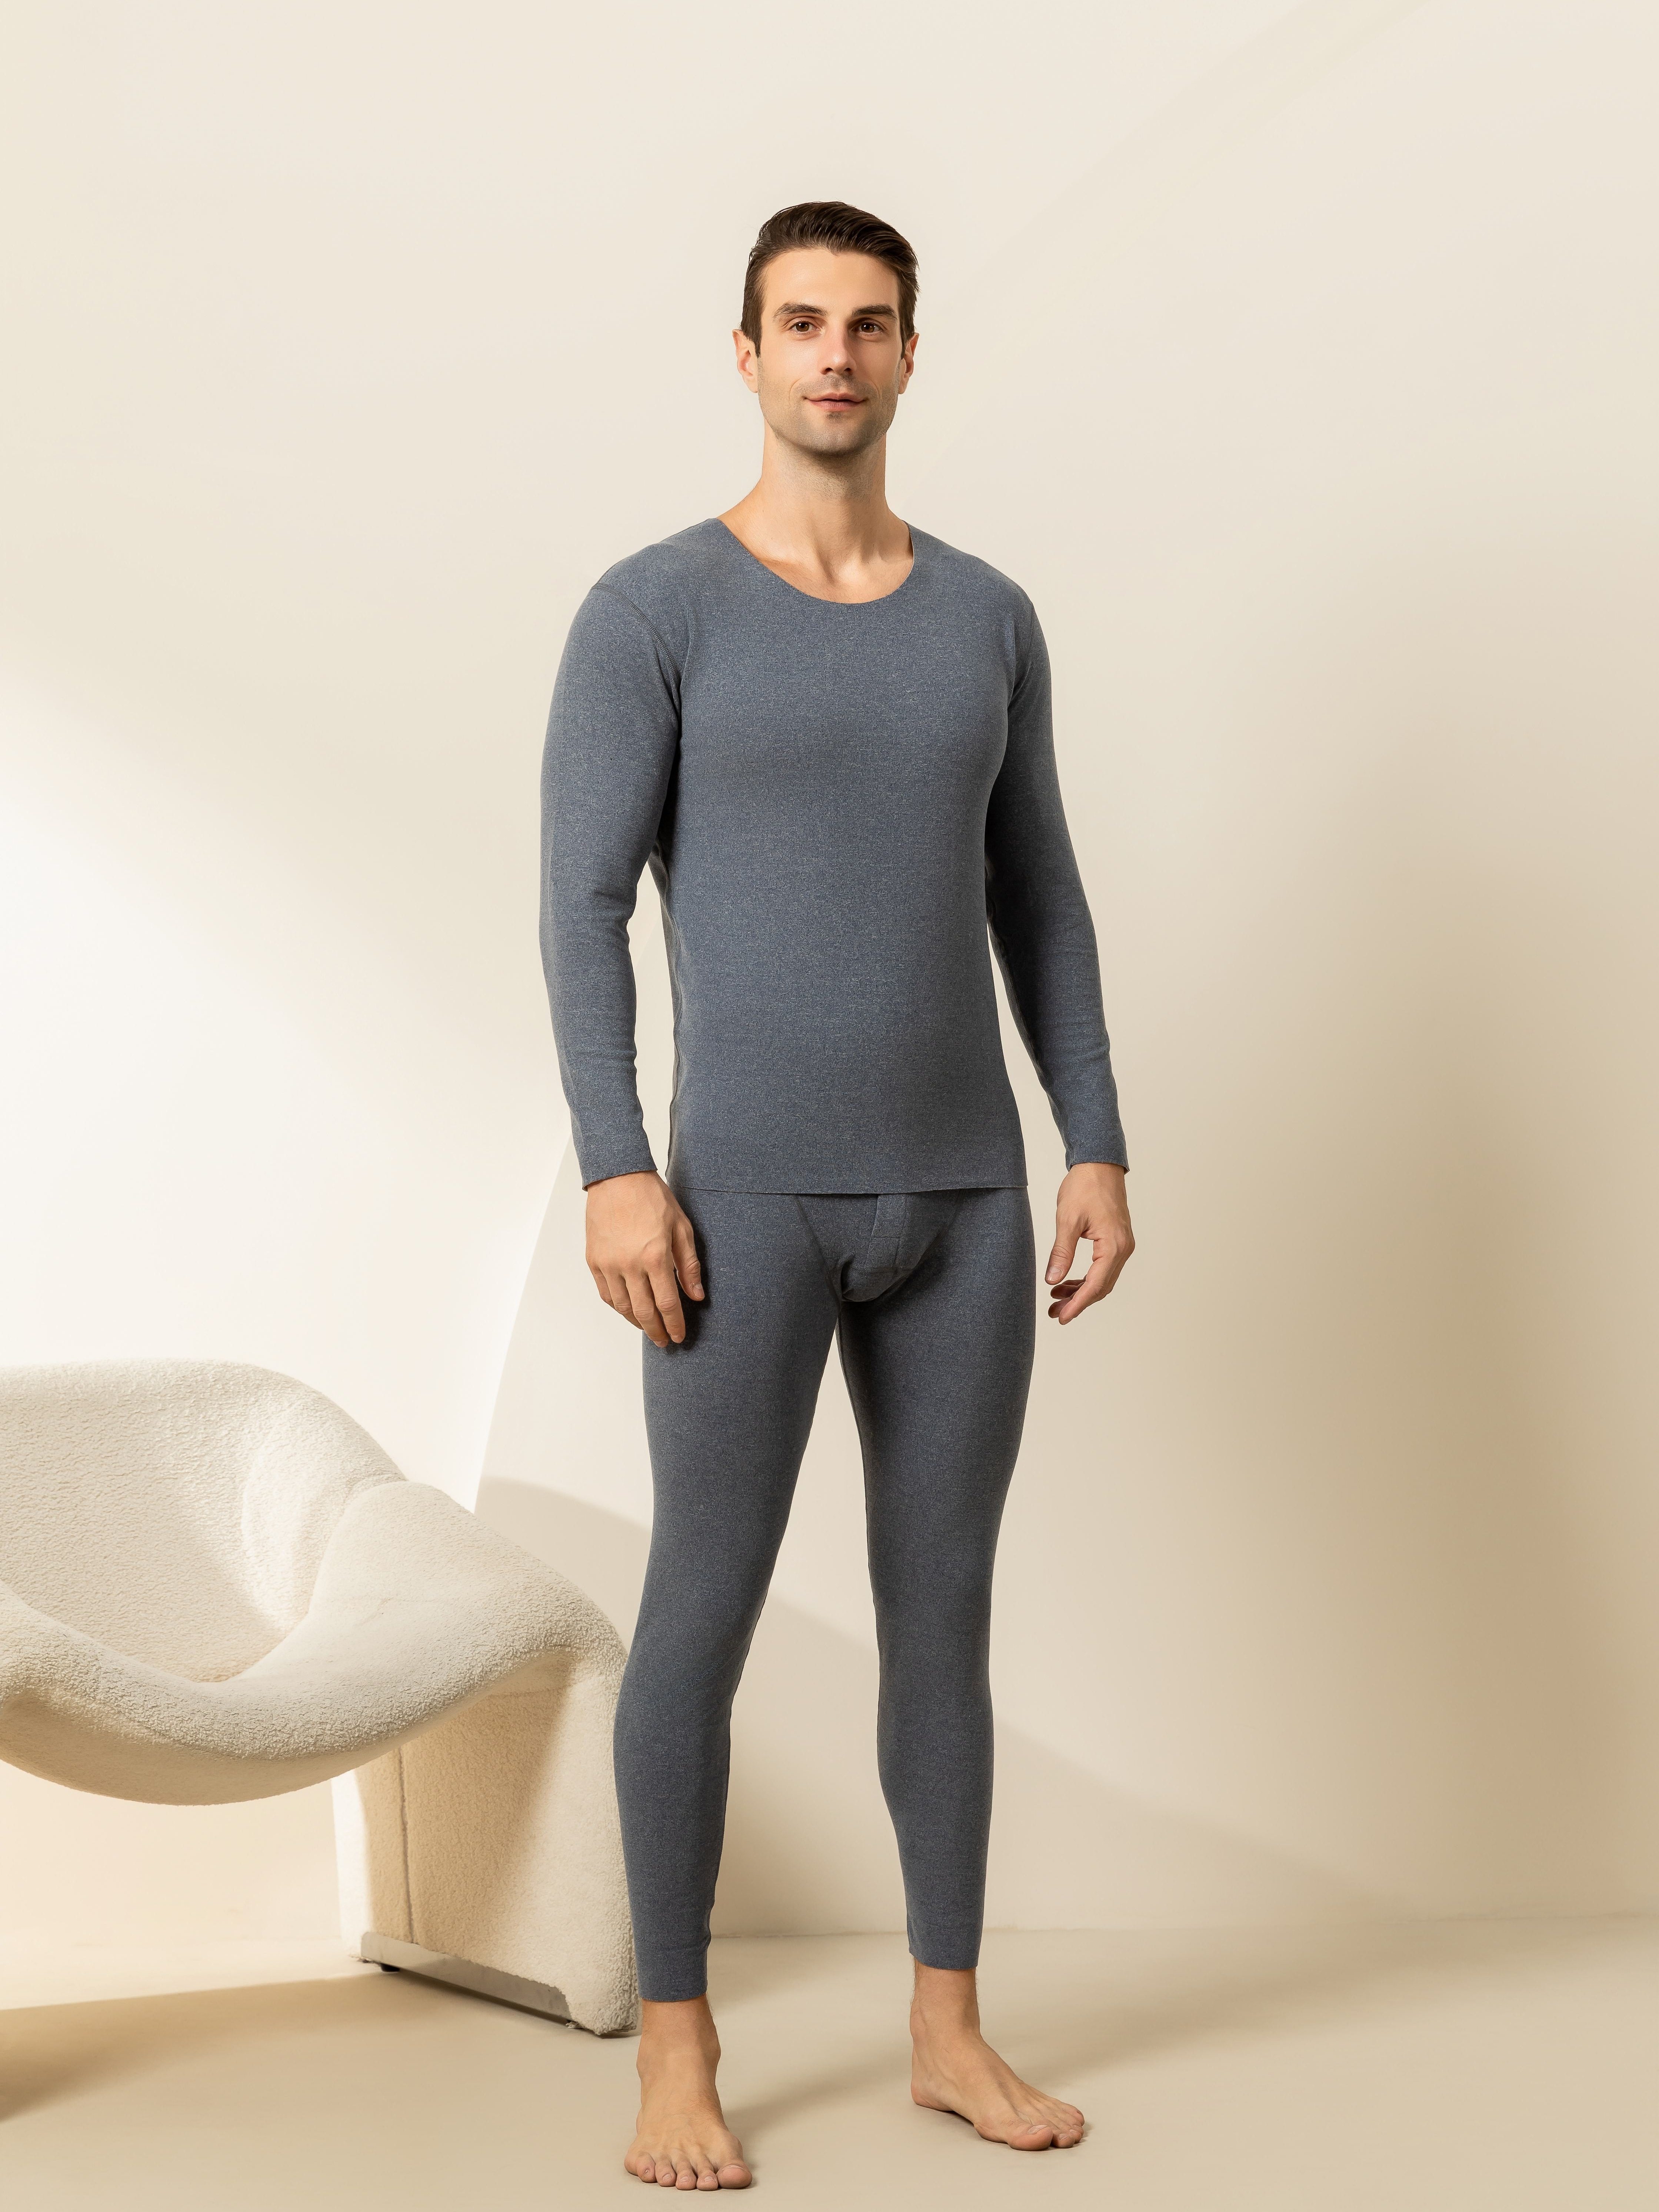 Ropa interior y pijamas para hombres